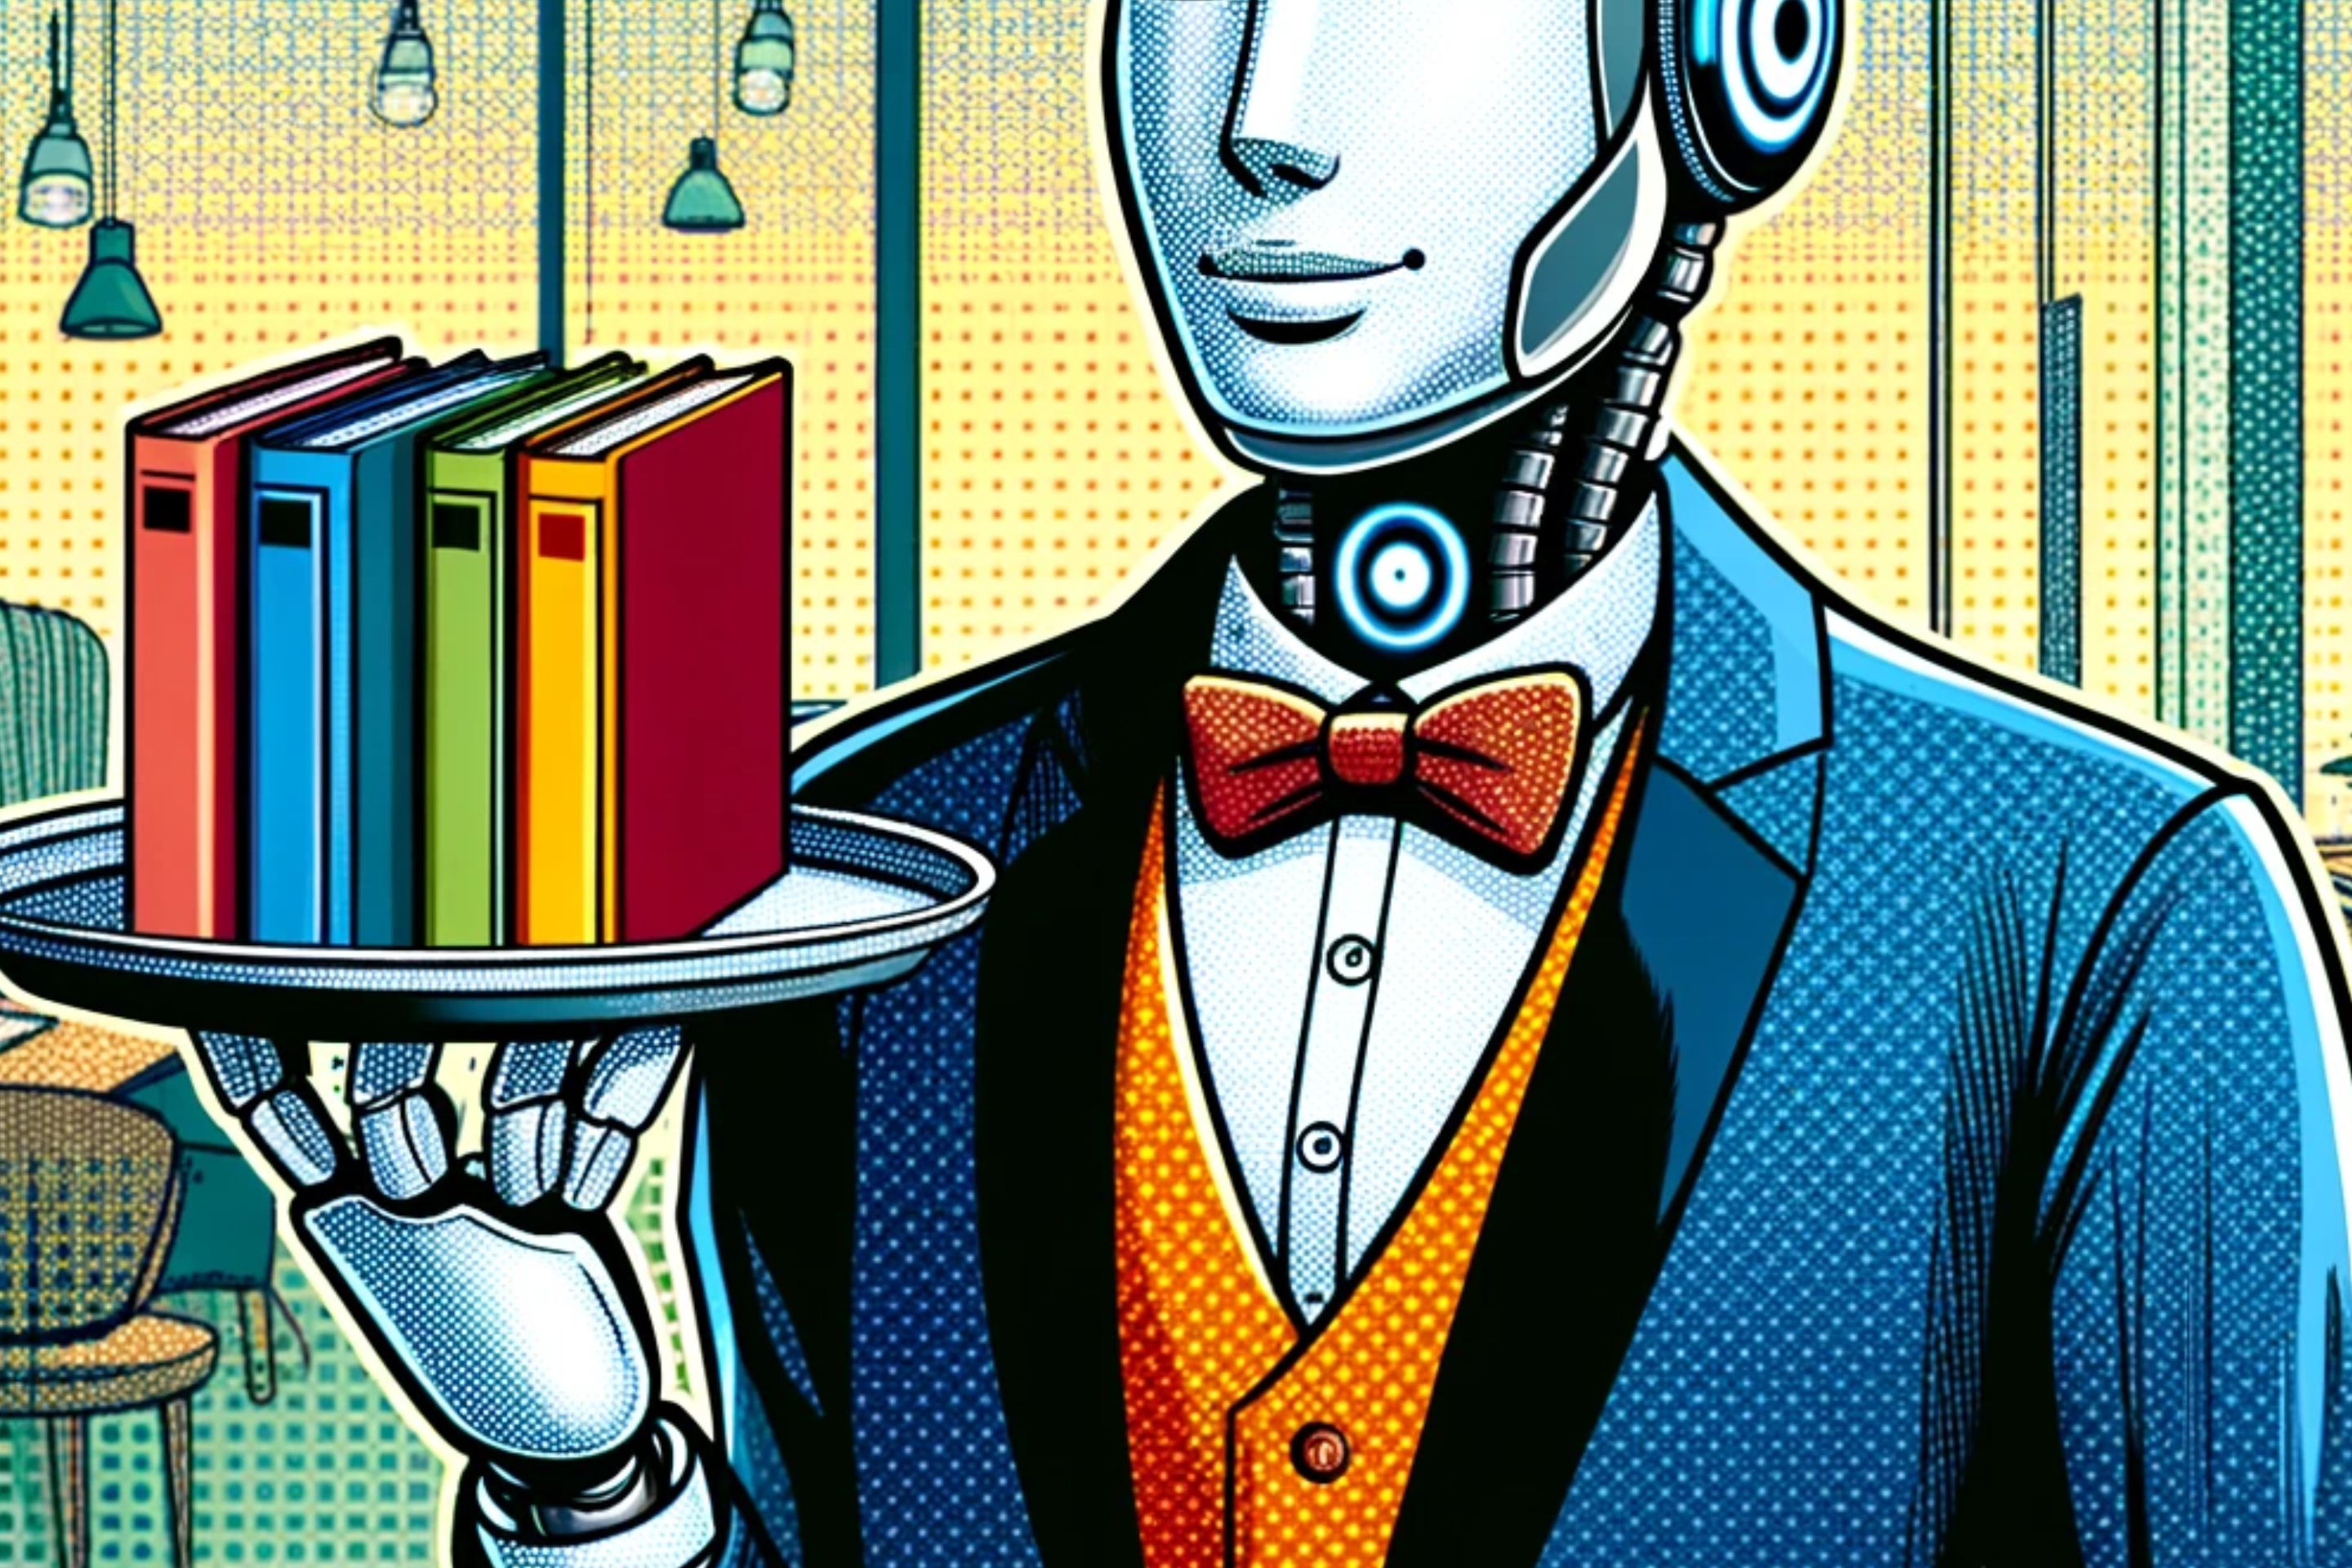 a robot butler serving books